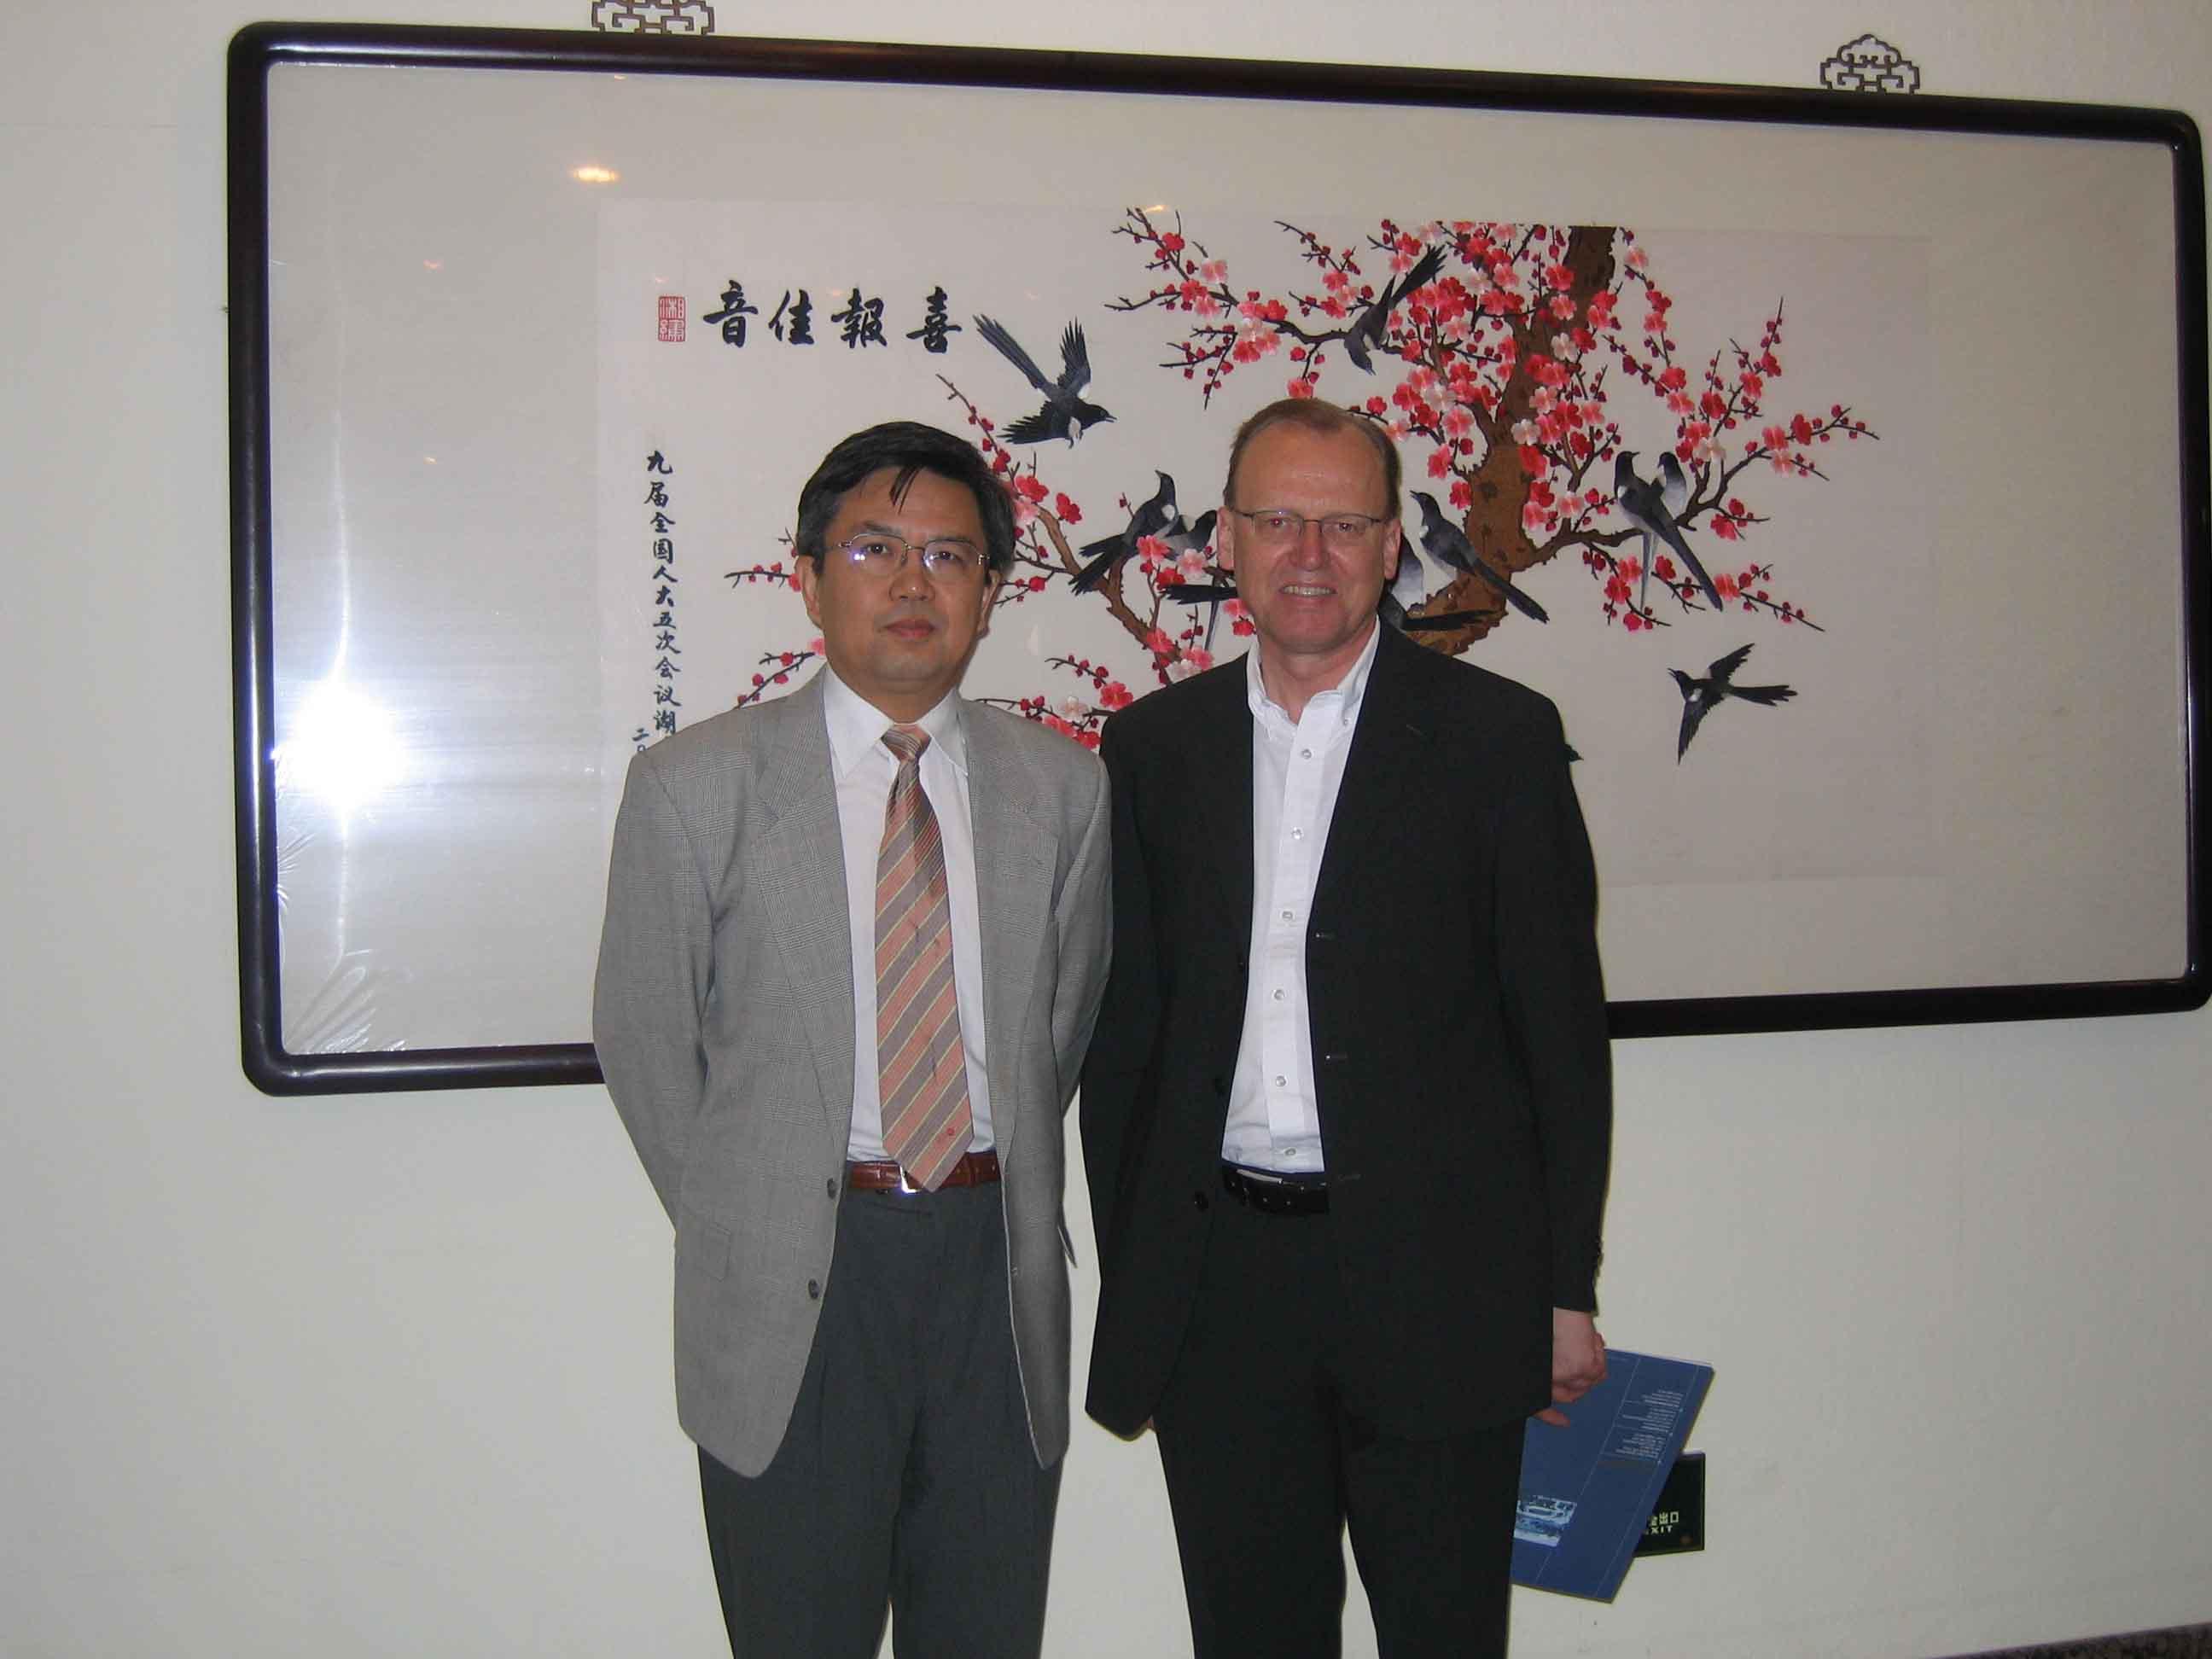 President Gong Met World-renowned Nano-Scientist Professor Flemming Basenbacher